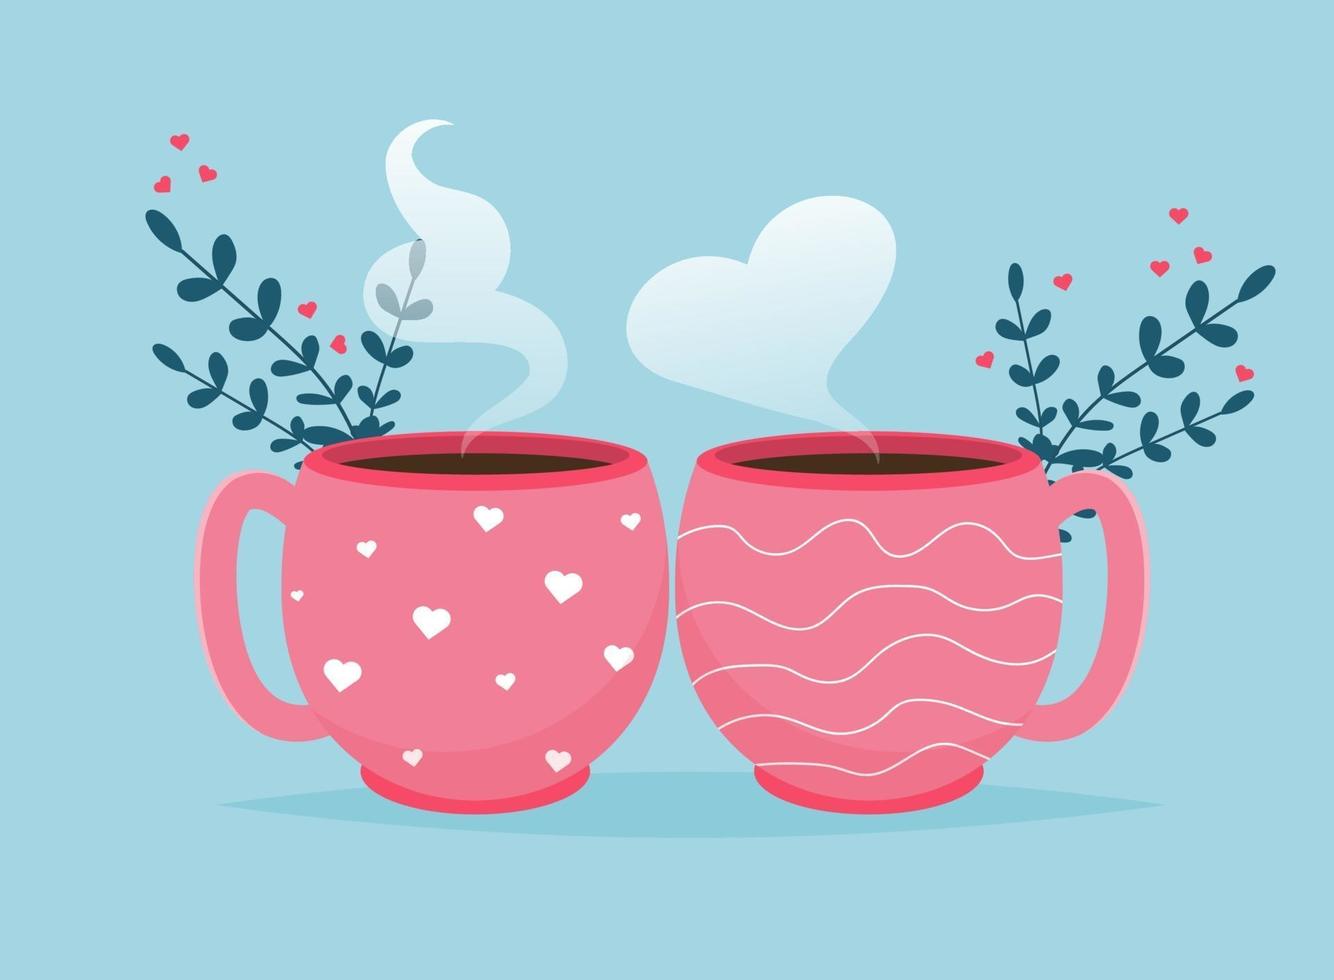 tarjeta de San Valentín con tazas de café te amo banner. Cartel o tarjeta de felicitación del día de San Valentín de vacaciones románticas. vector